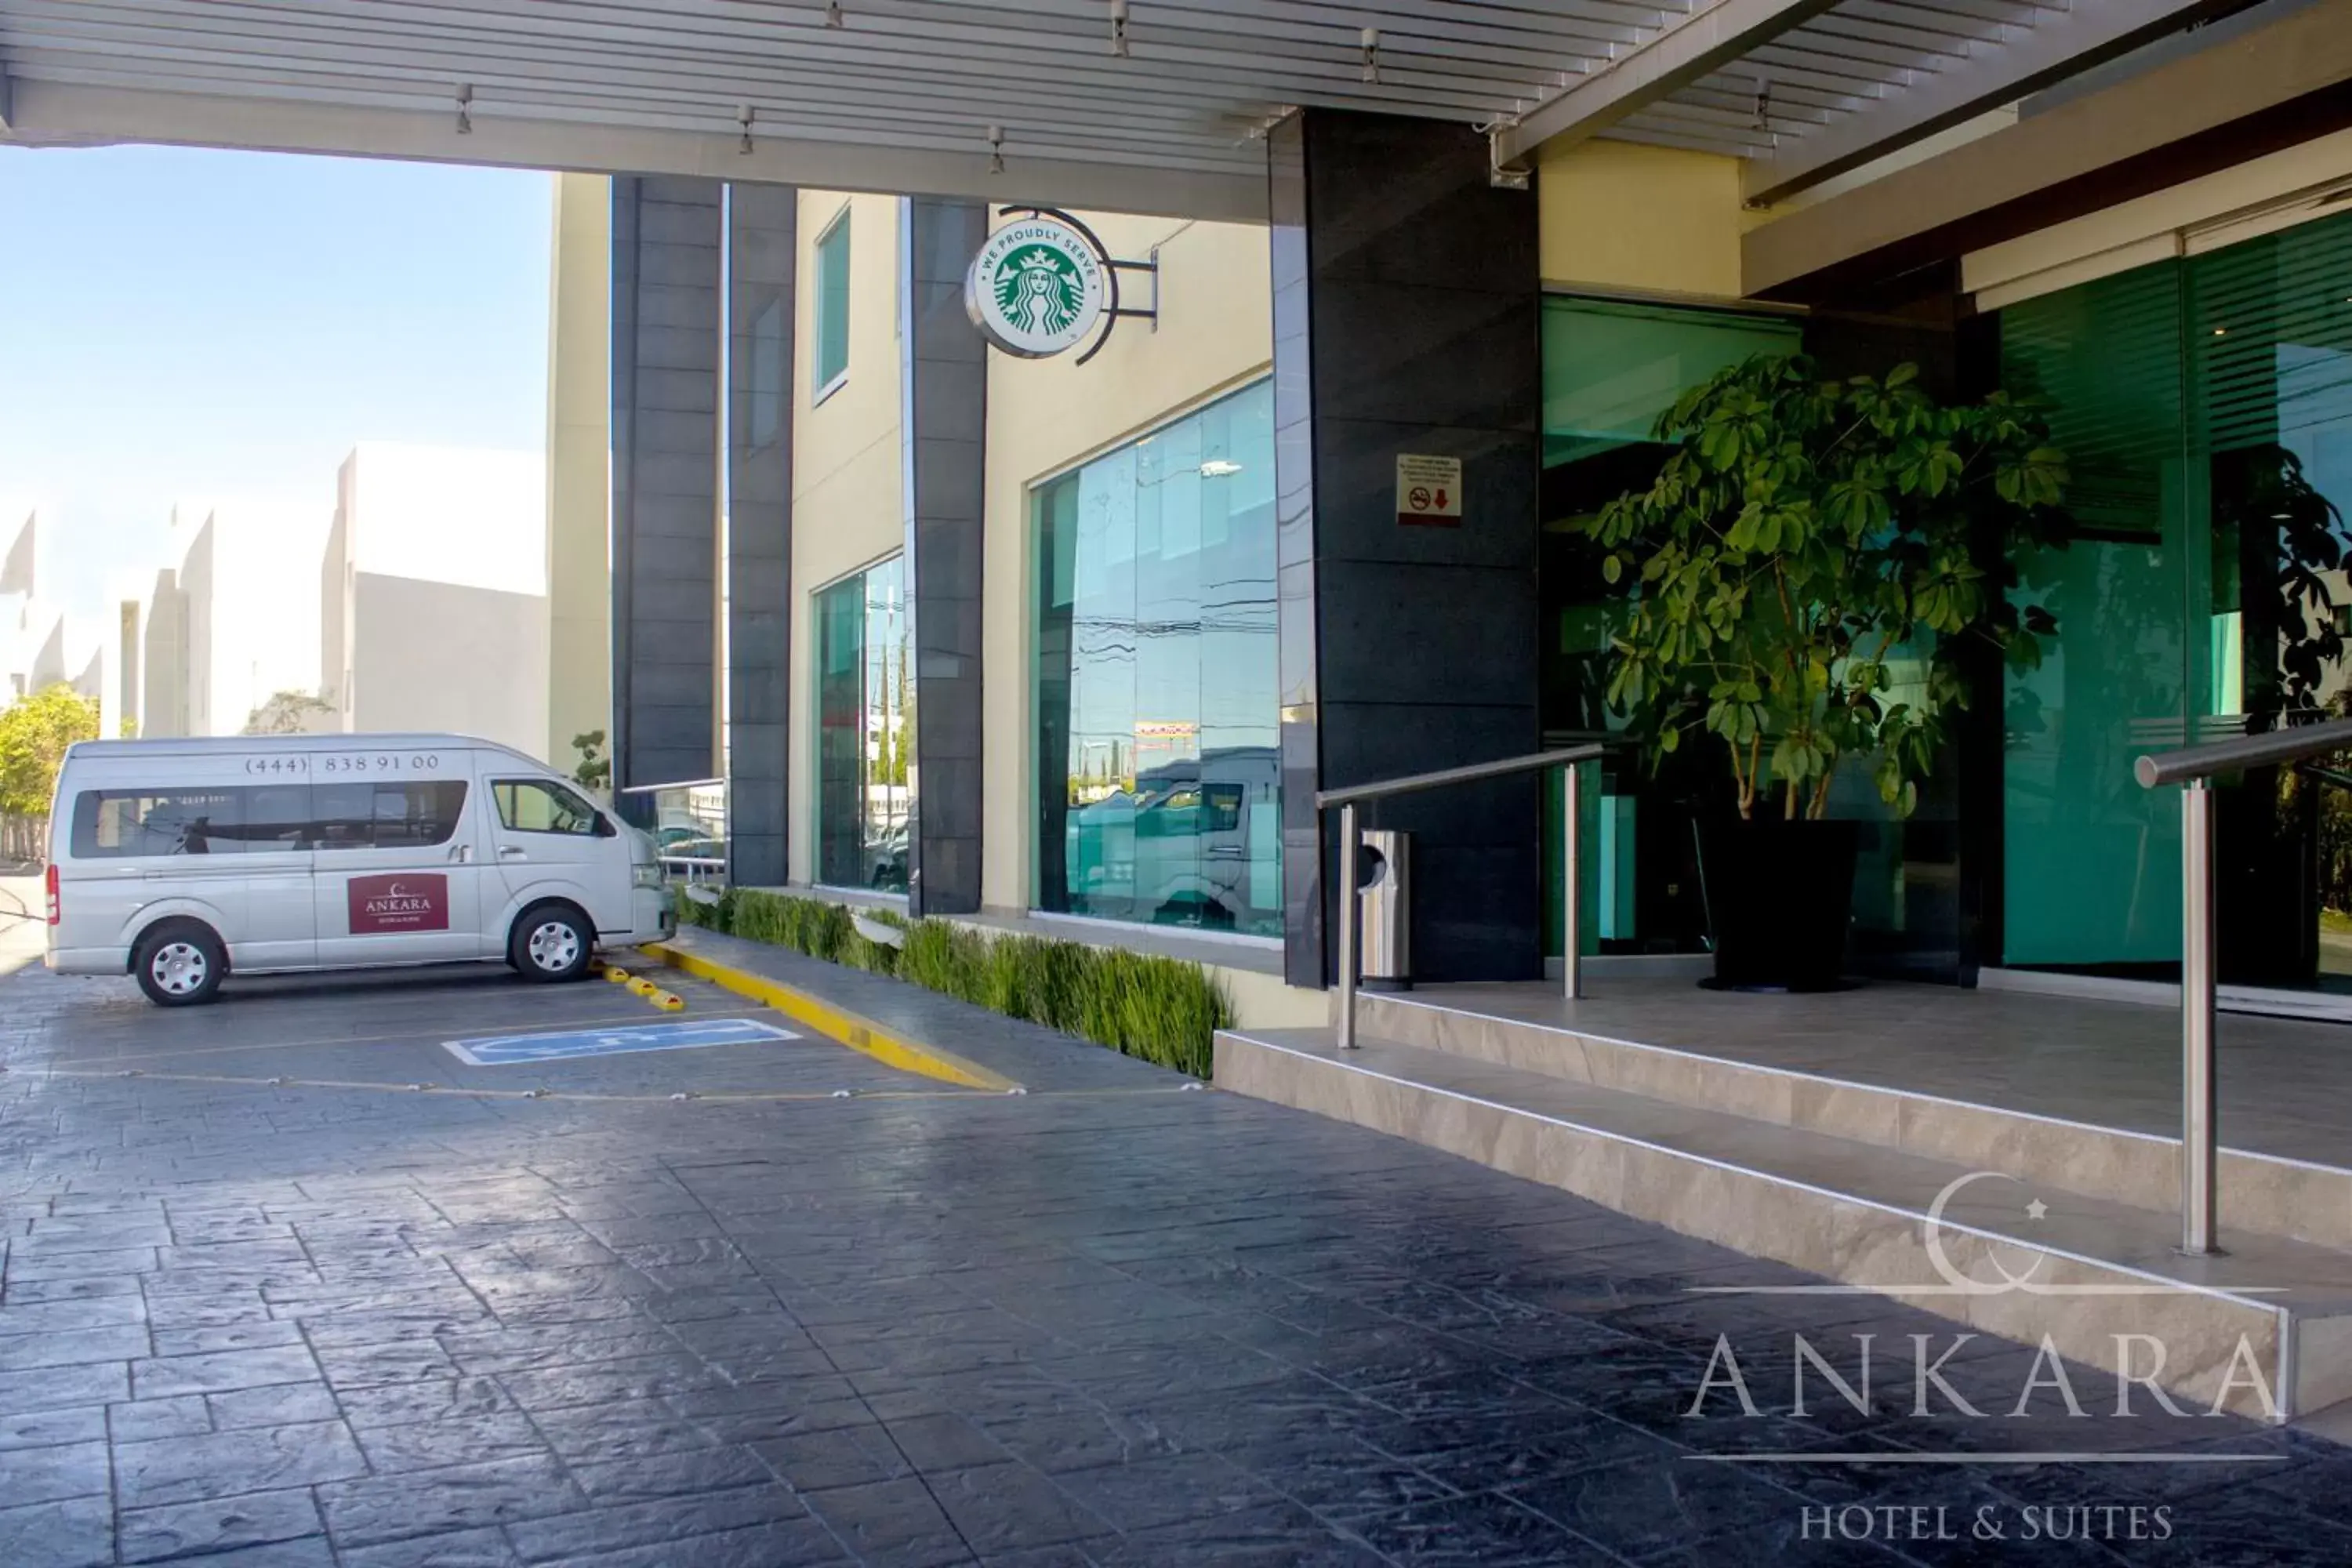 Facade/entrance in Hotel Ankara "Las Lomas"